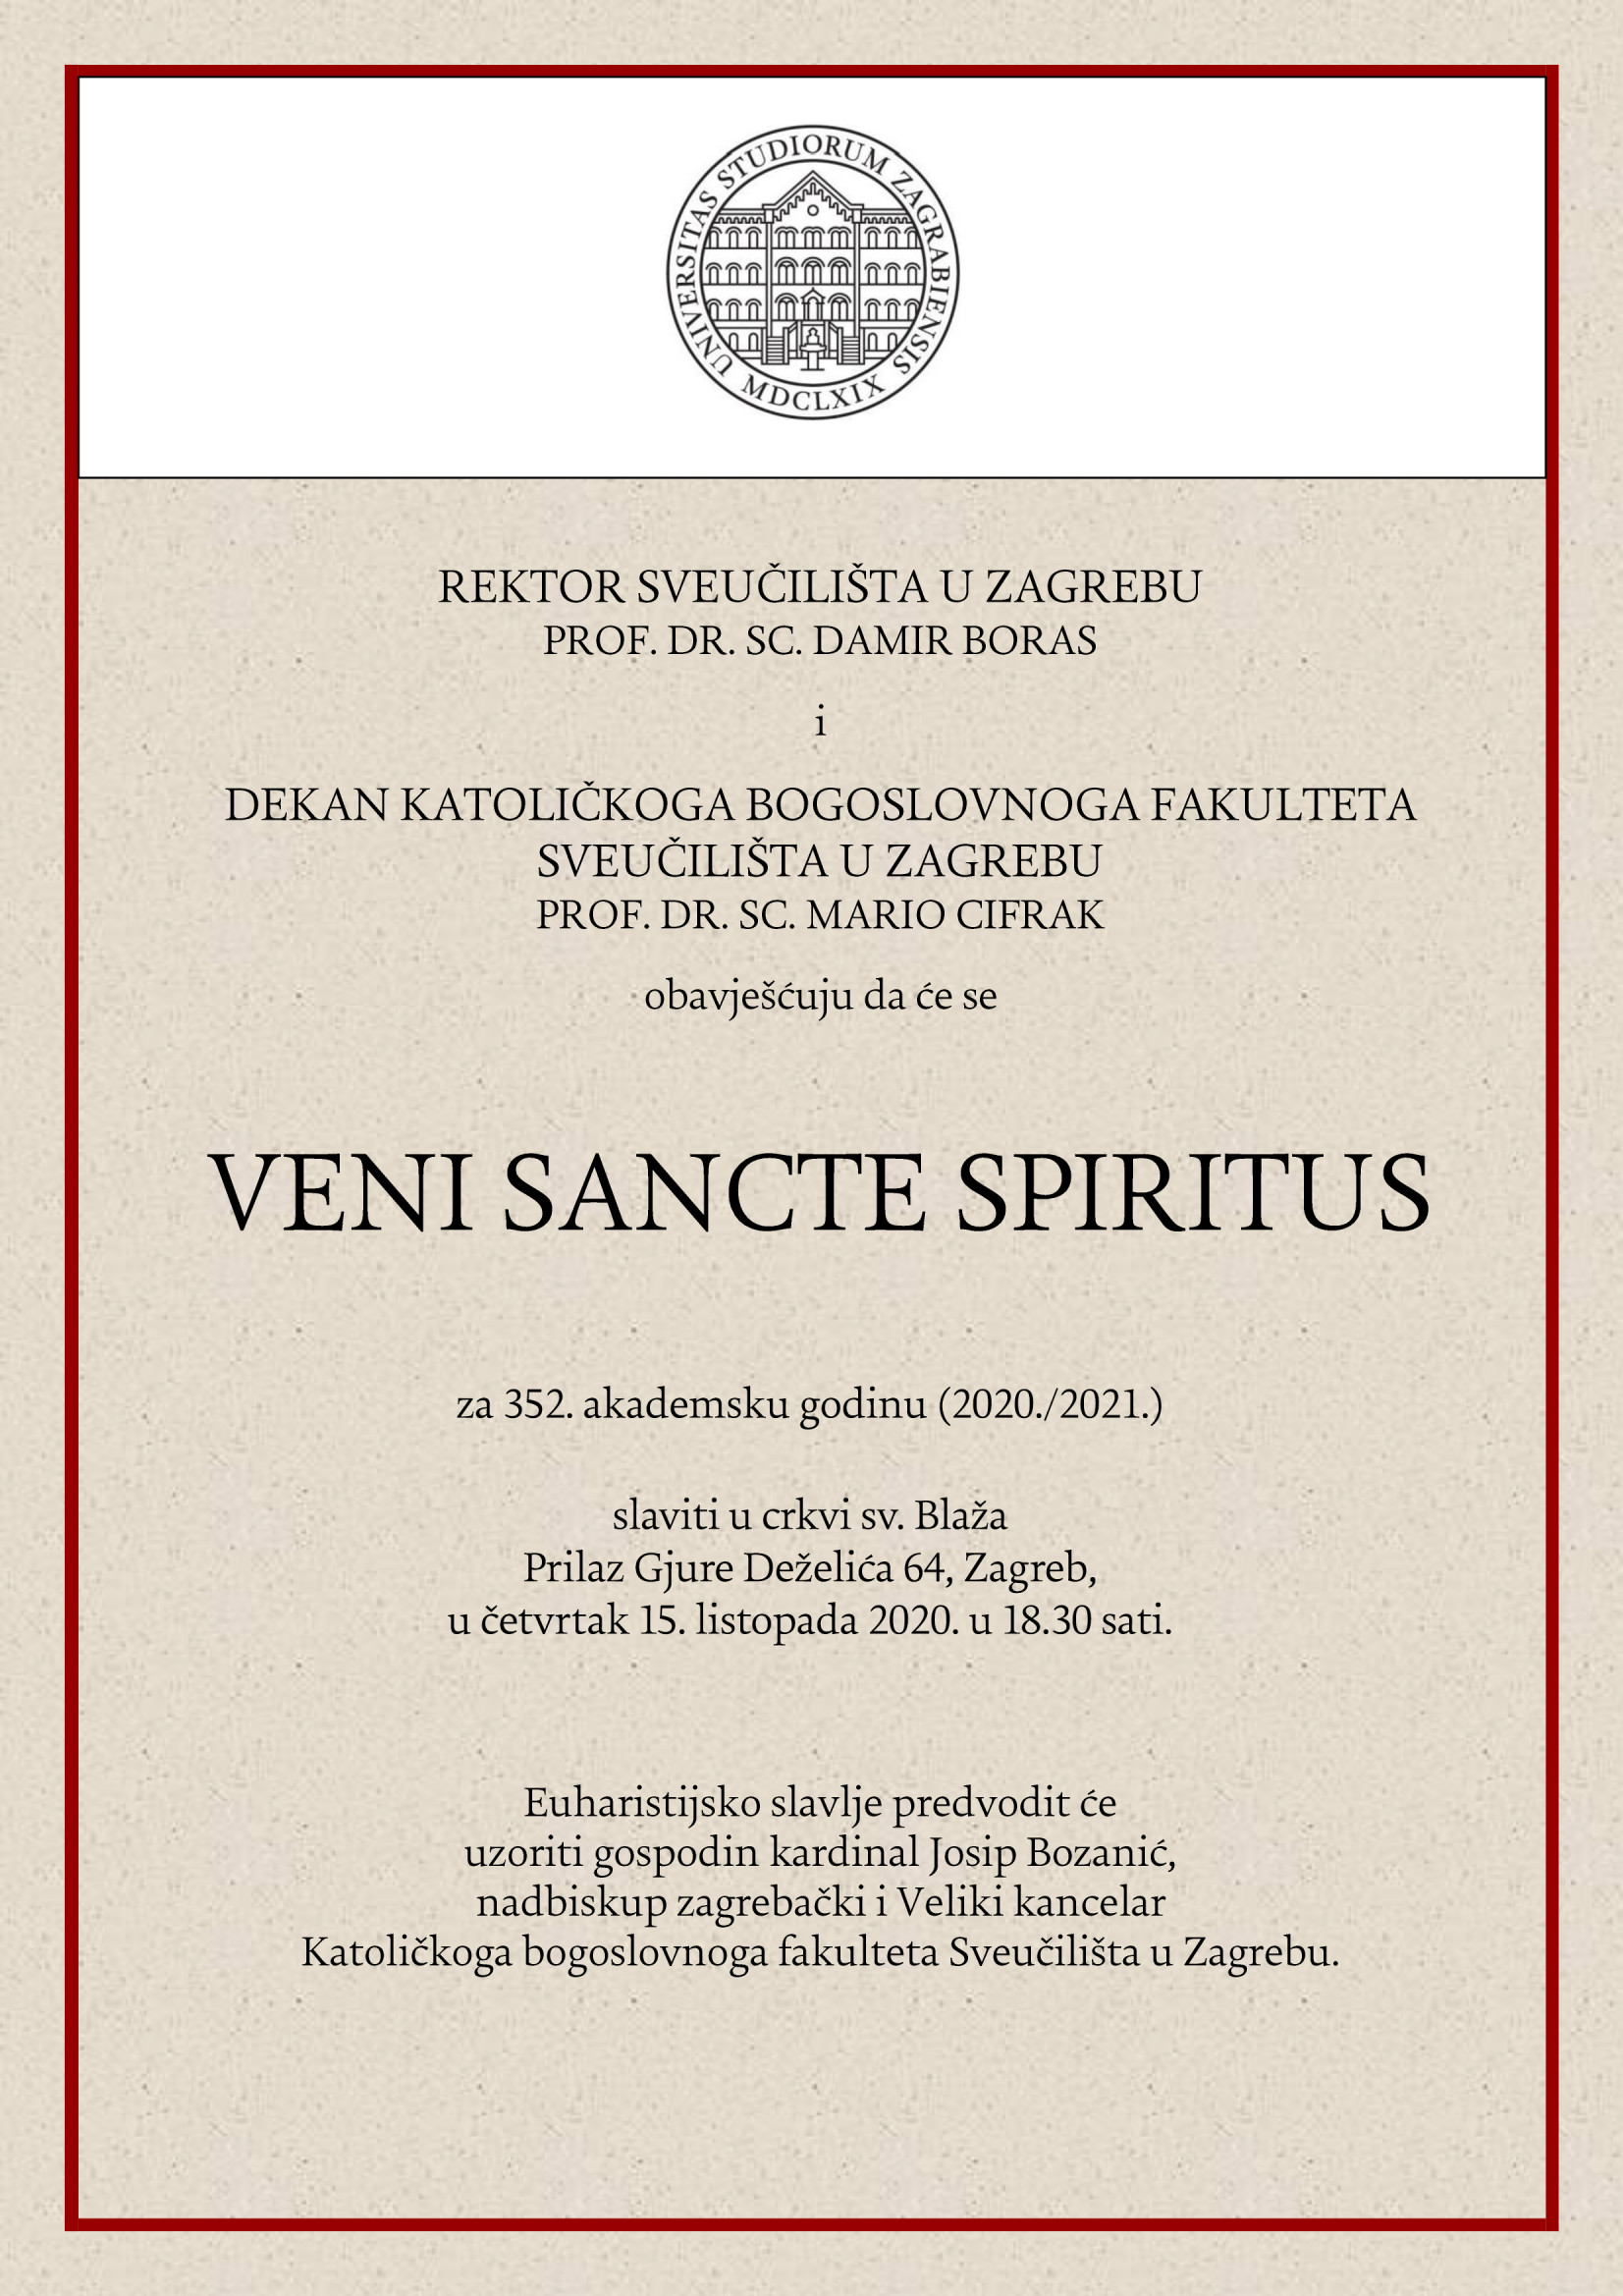 Veni Sancte Spiritus 2020.